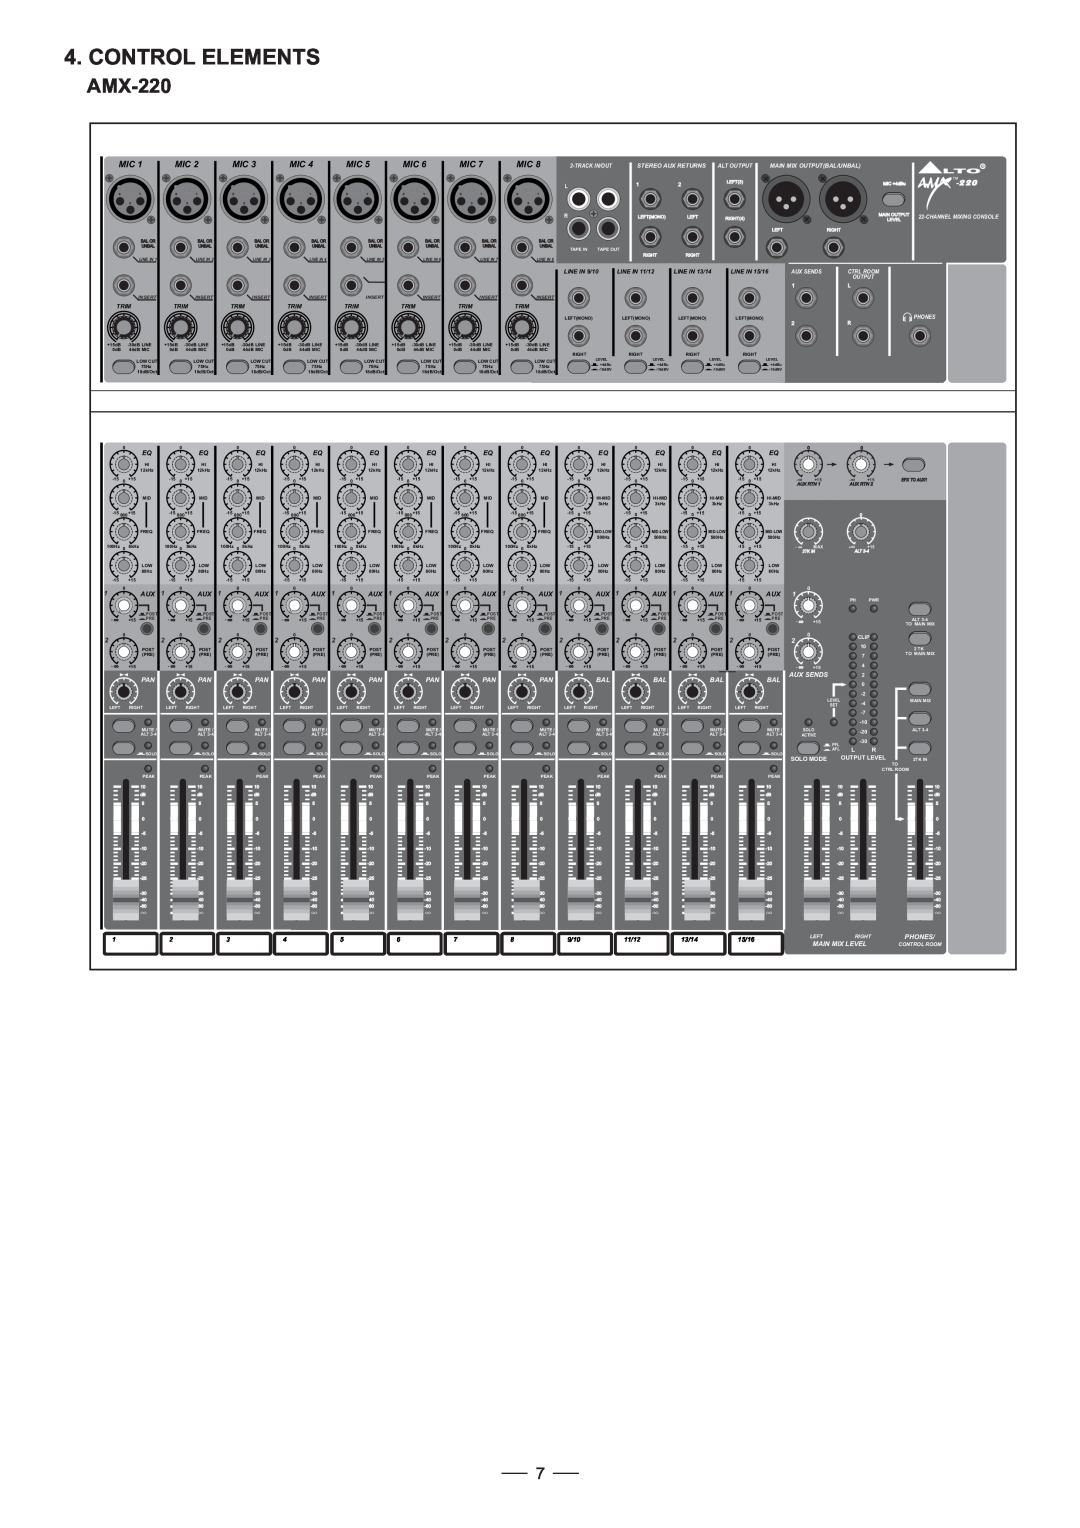 Humminbird AMX-220FX user manual Control Elements, Aux Sends, 9/10, 11/12, 13/14, 15/16, Phones, Main Mix Level 